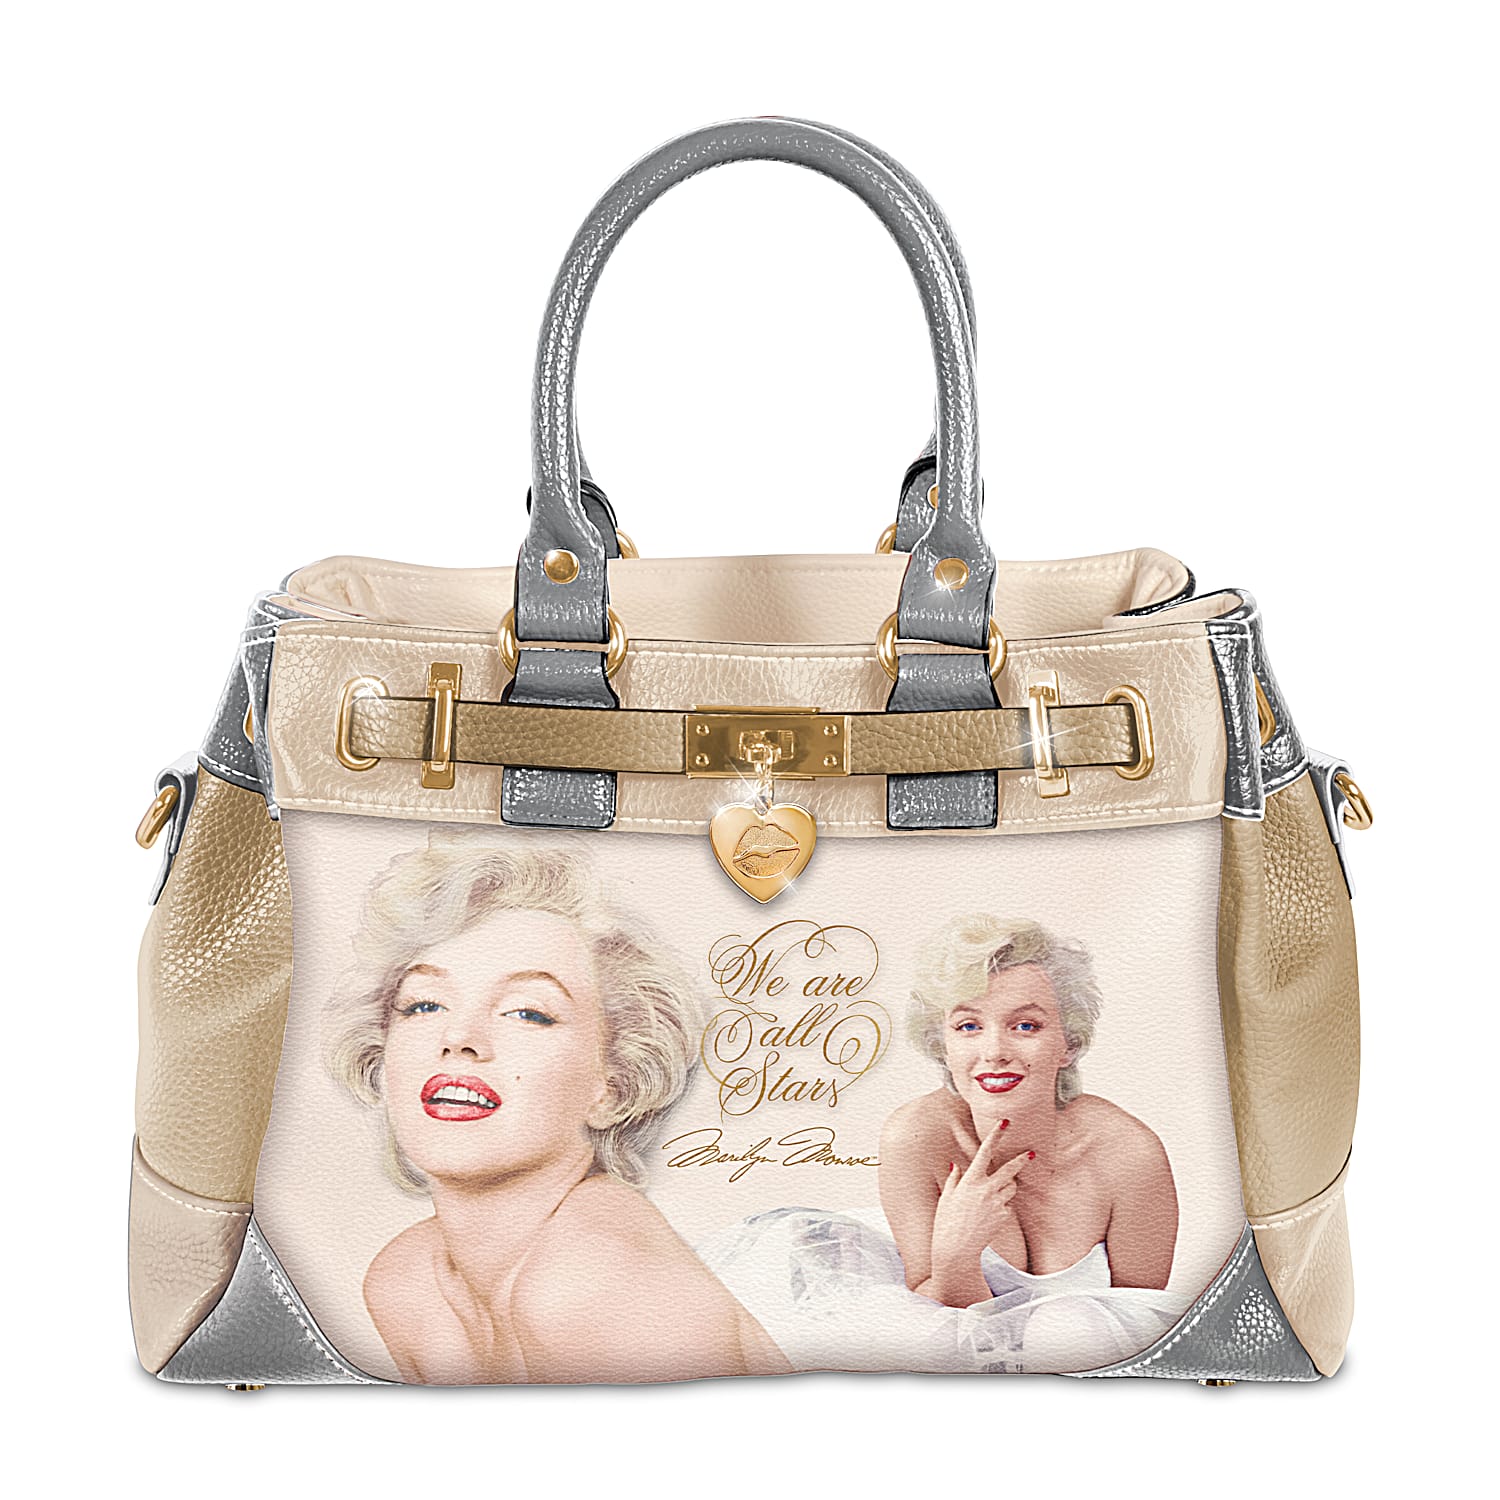 Marilyn monroe purse - Gem